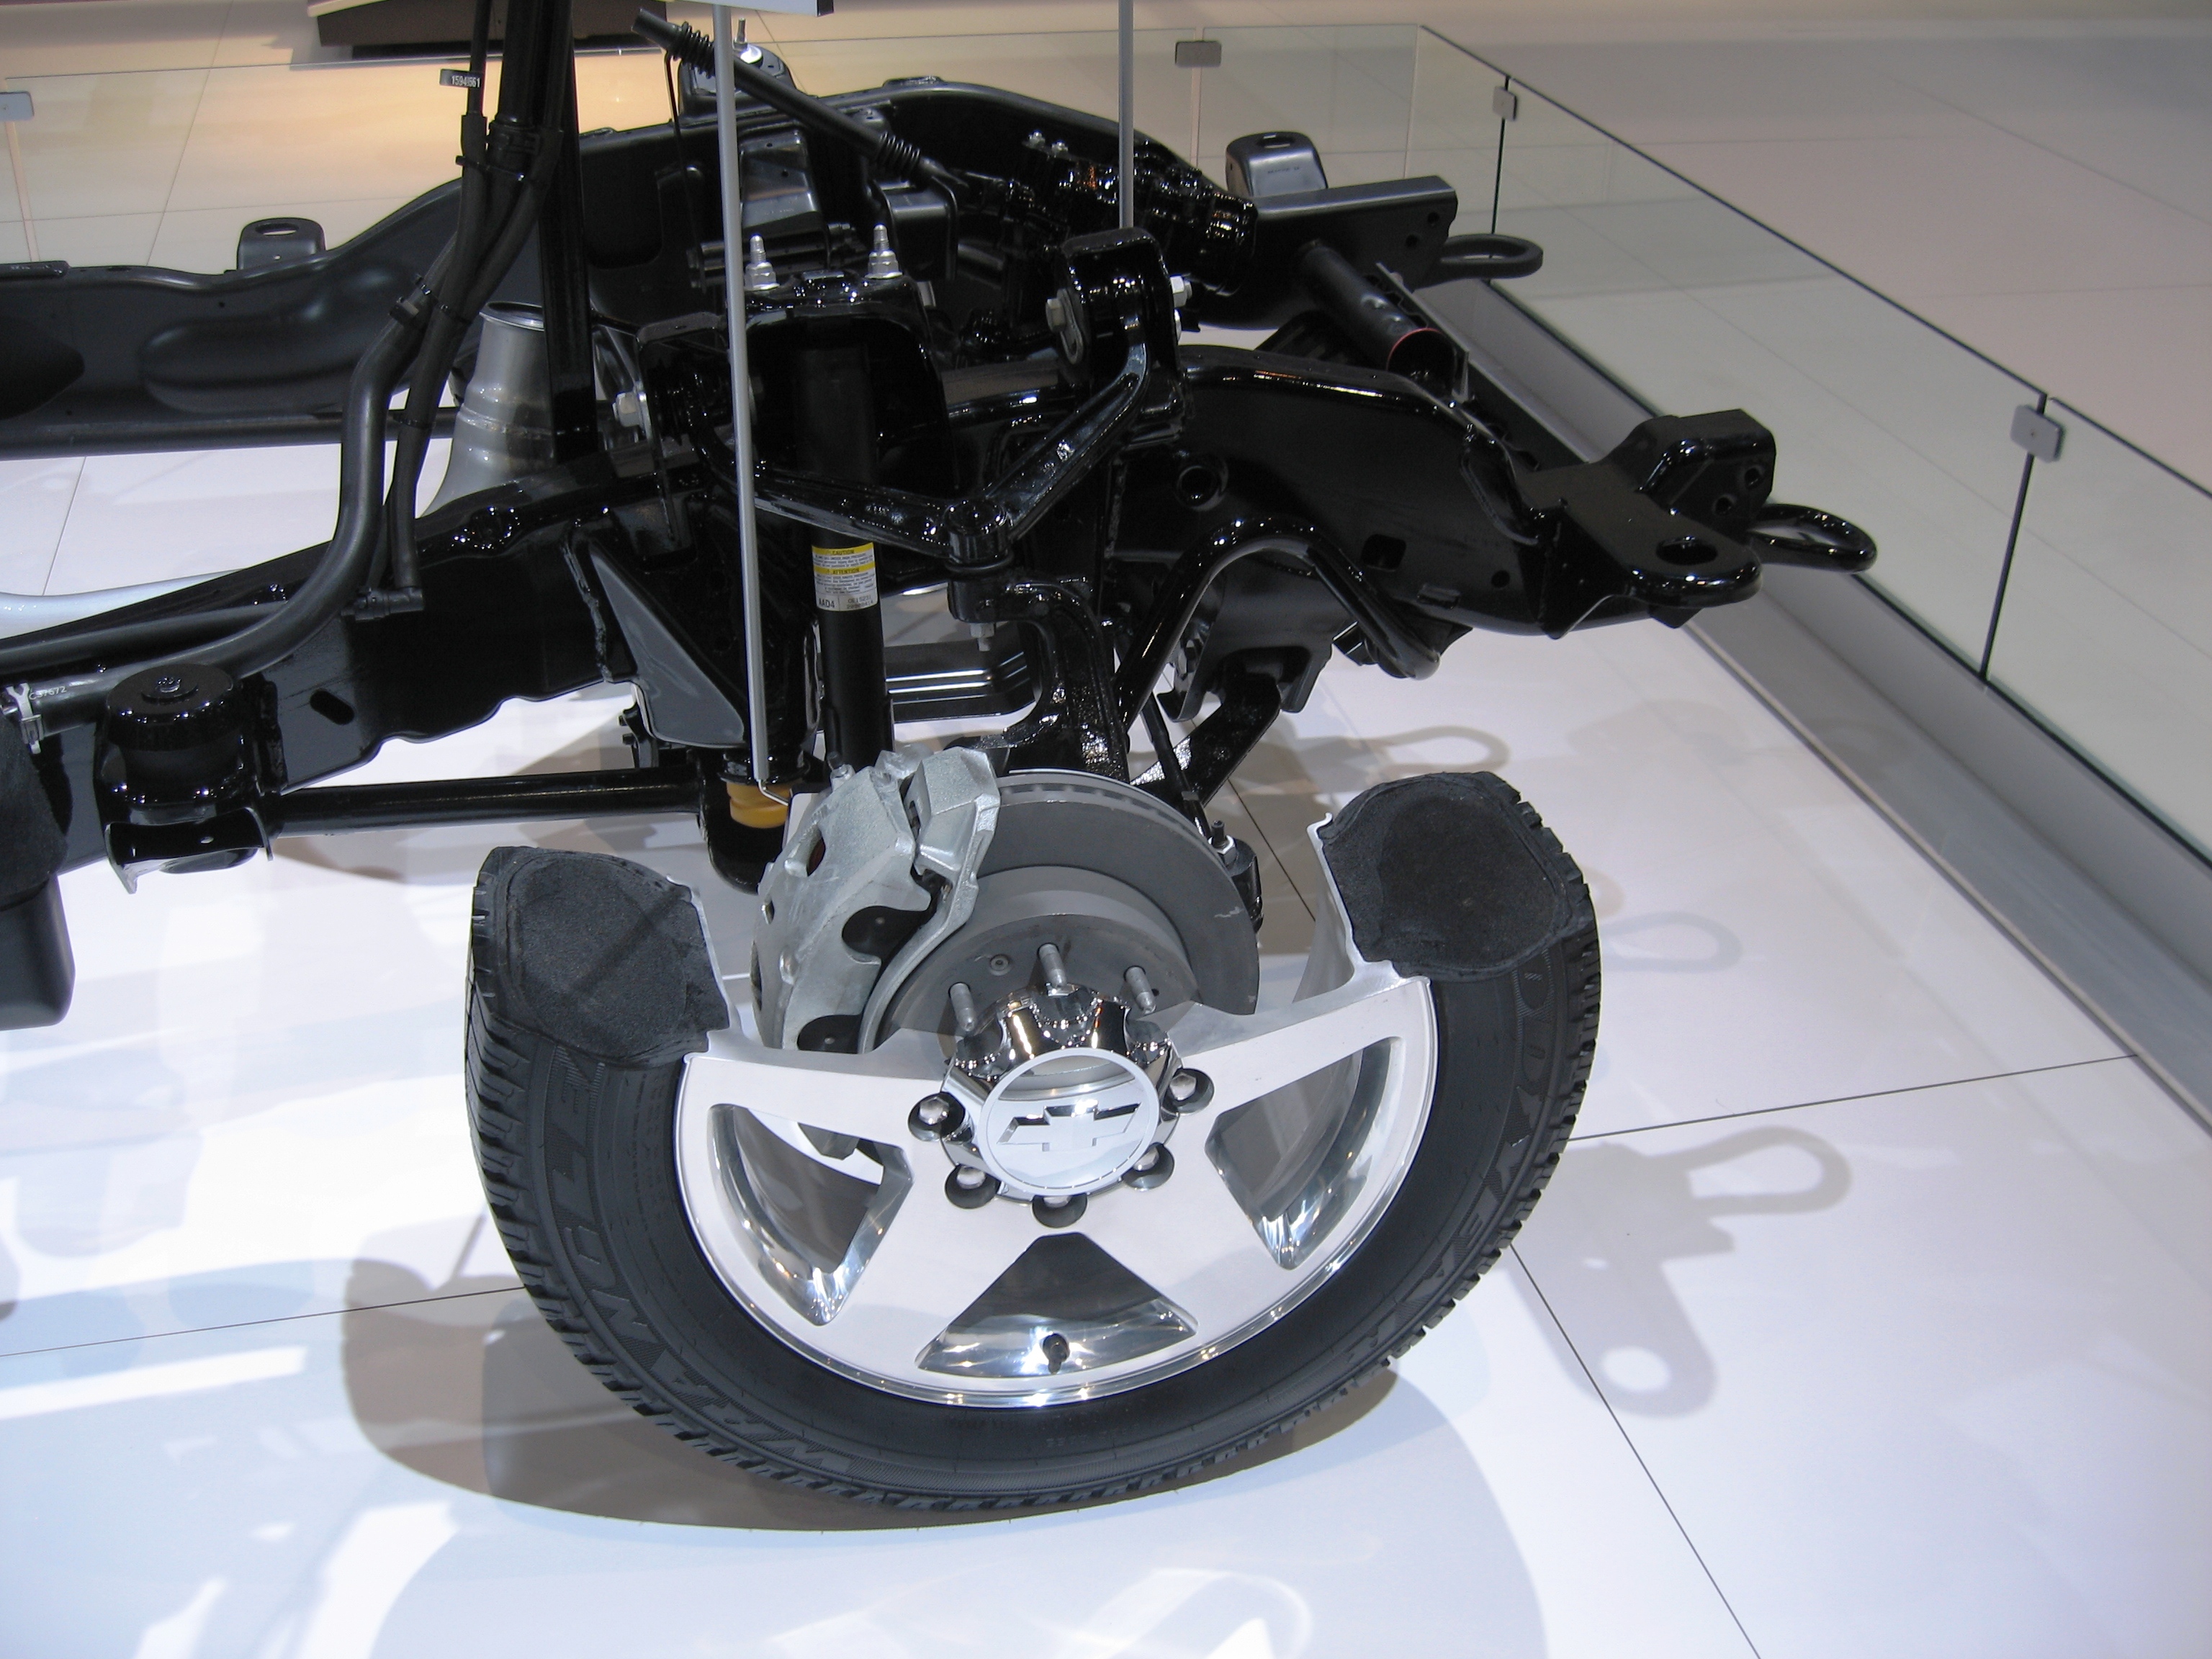 2011 Chevy Silverado cutaway frame